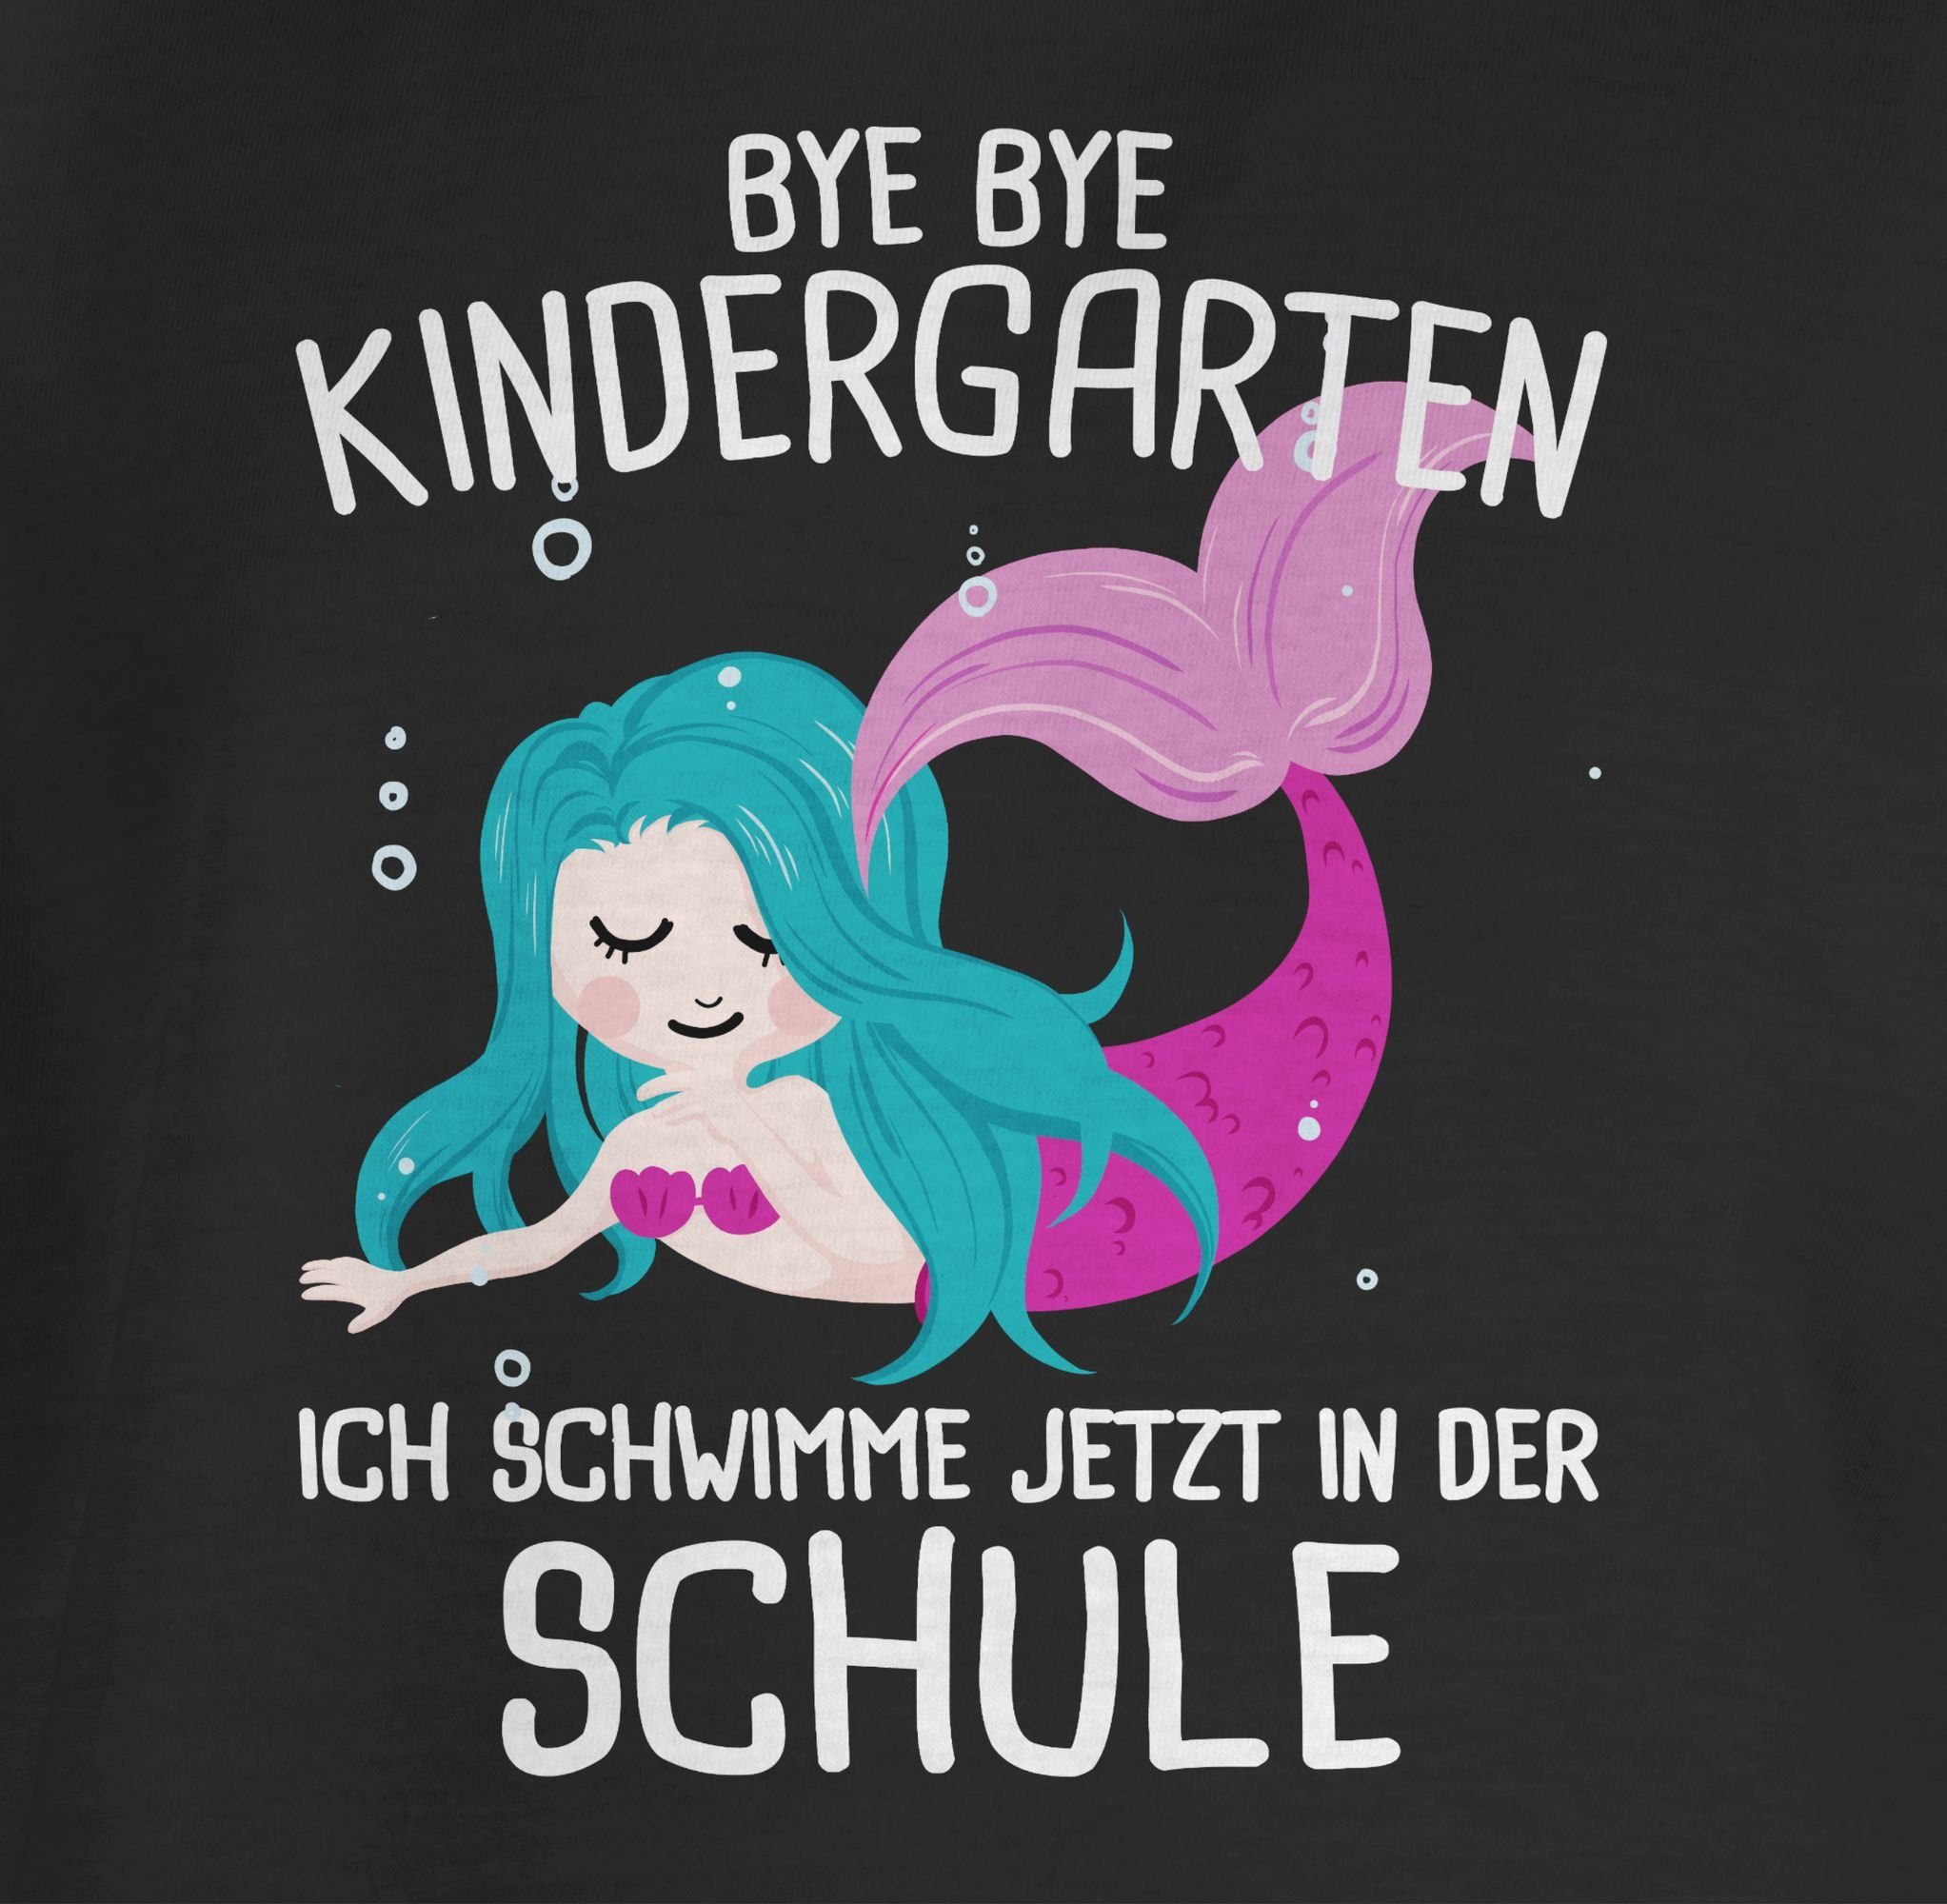 Shirtracer T-Shirt Bye Bye jetzt der Schwarz schwimme ich Mädchen Schule 3 Einschulung in Kindergarten